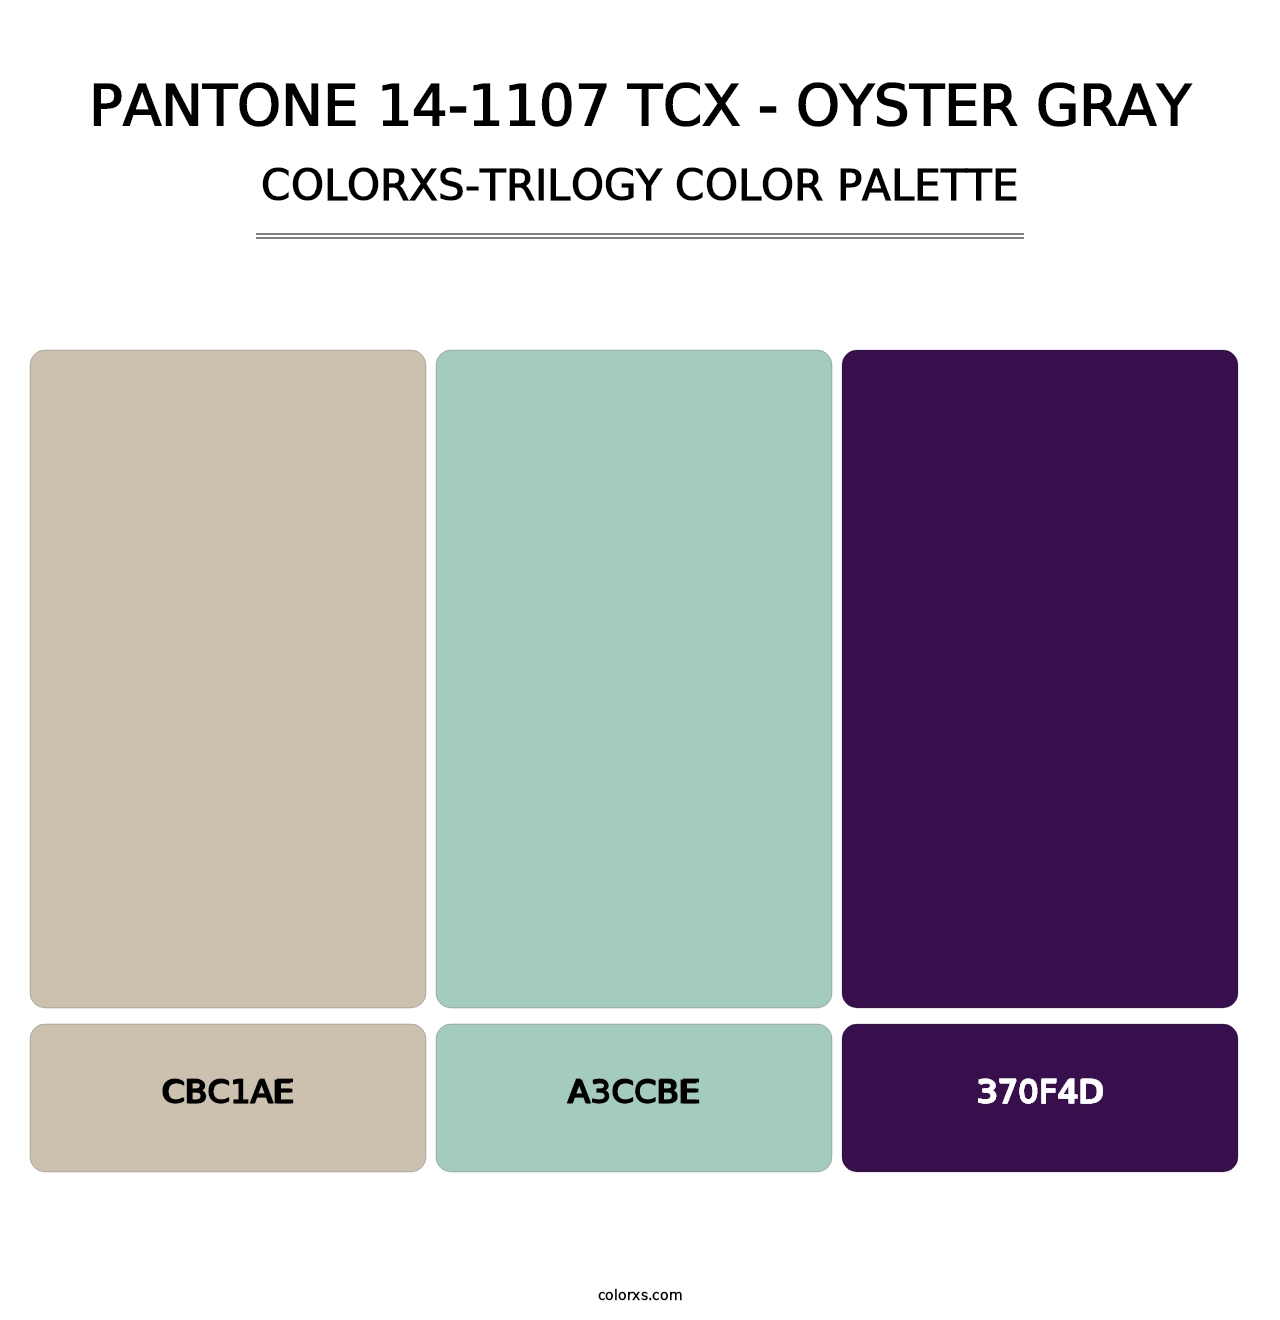 PANTONE 14-1107 TCX - Oyster Gray - Colorxs Trilogy Palette